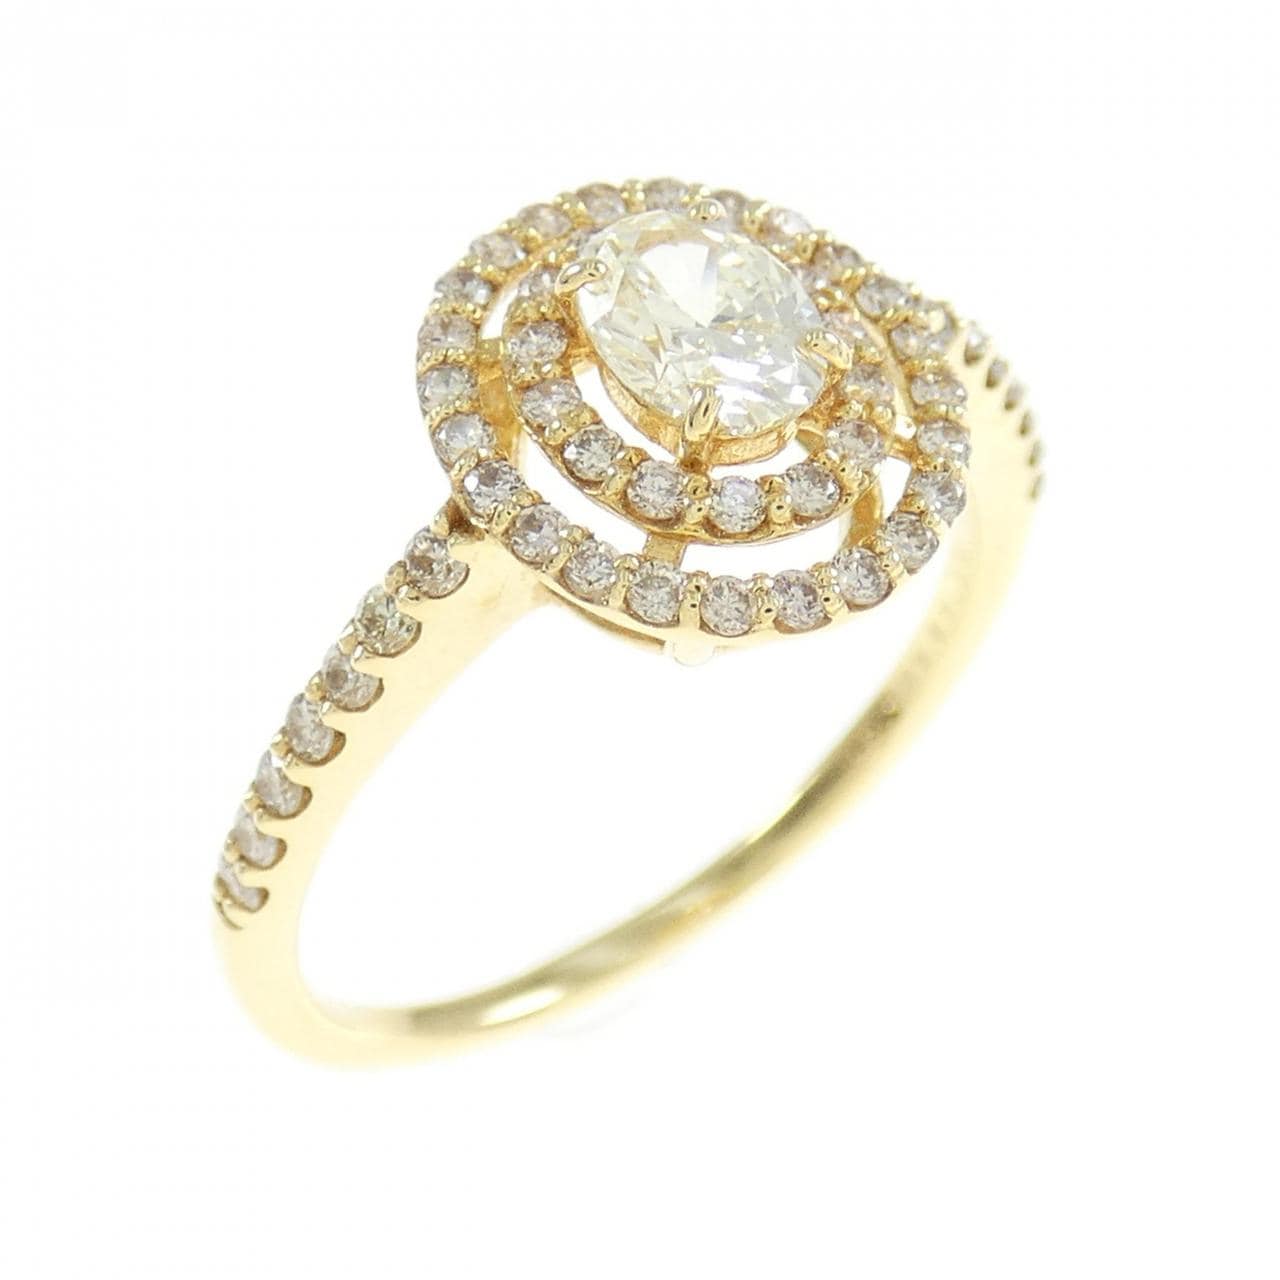 [BRAND NEW] K18YG Diamond ring 0.331CT M VVS2 oval cut